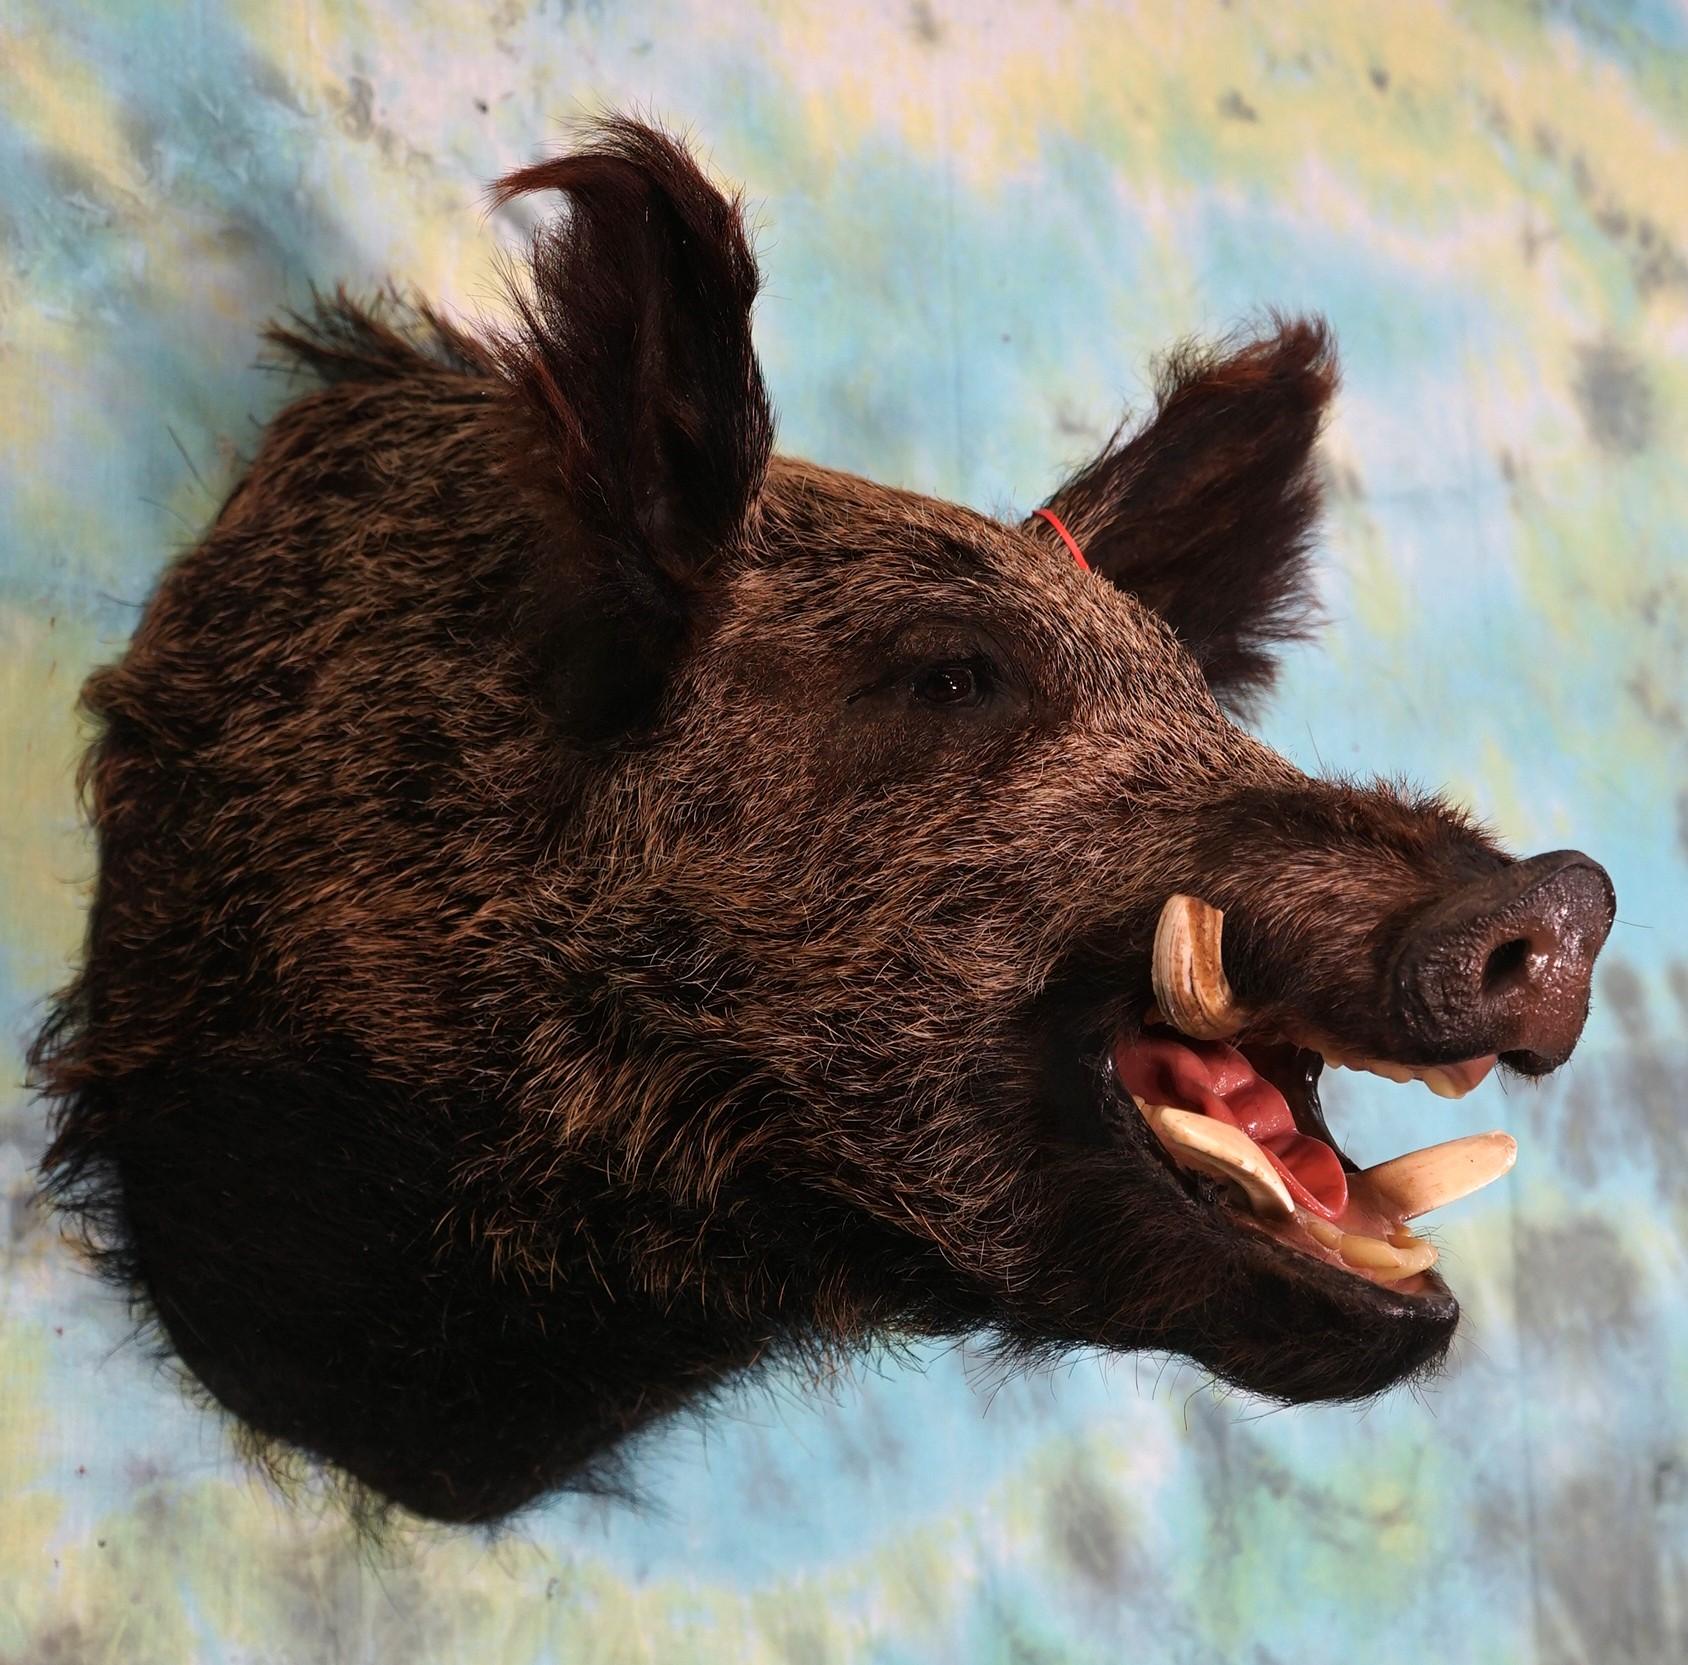 Russian Boar Shoulder Taxidermy Mount